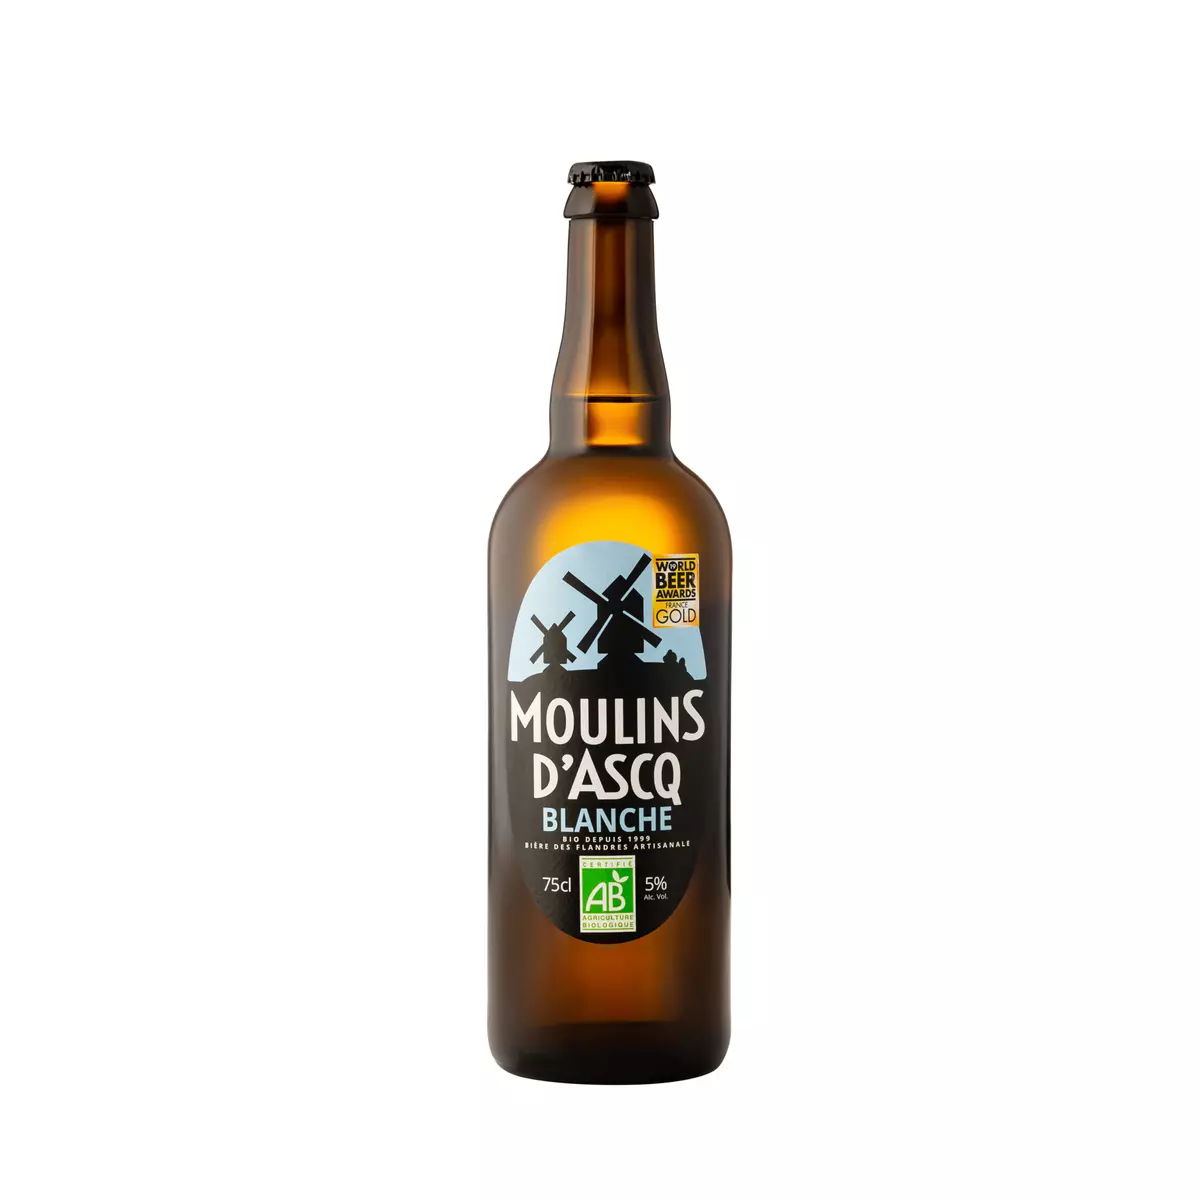 MOULINS D'ASCQ Bière blanche des Flandres bio 5% 75cl